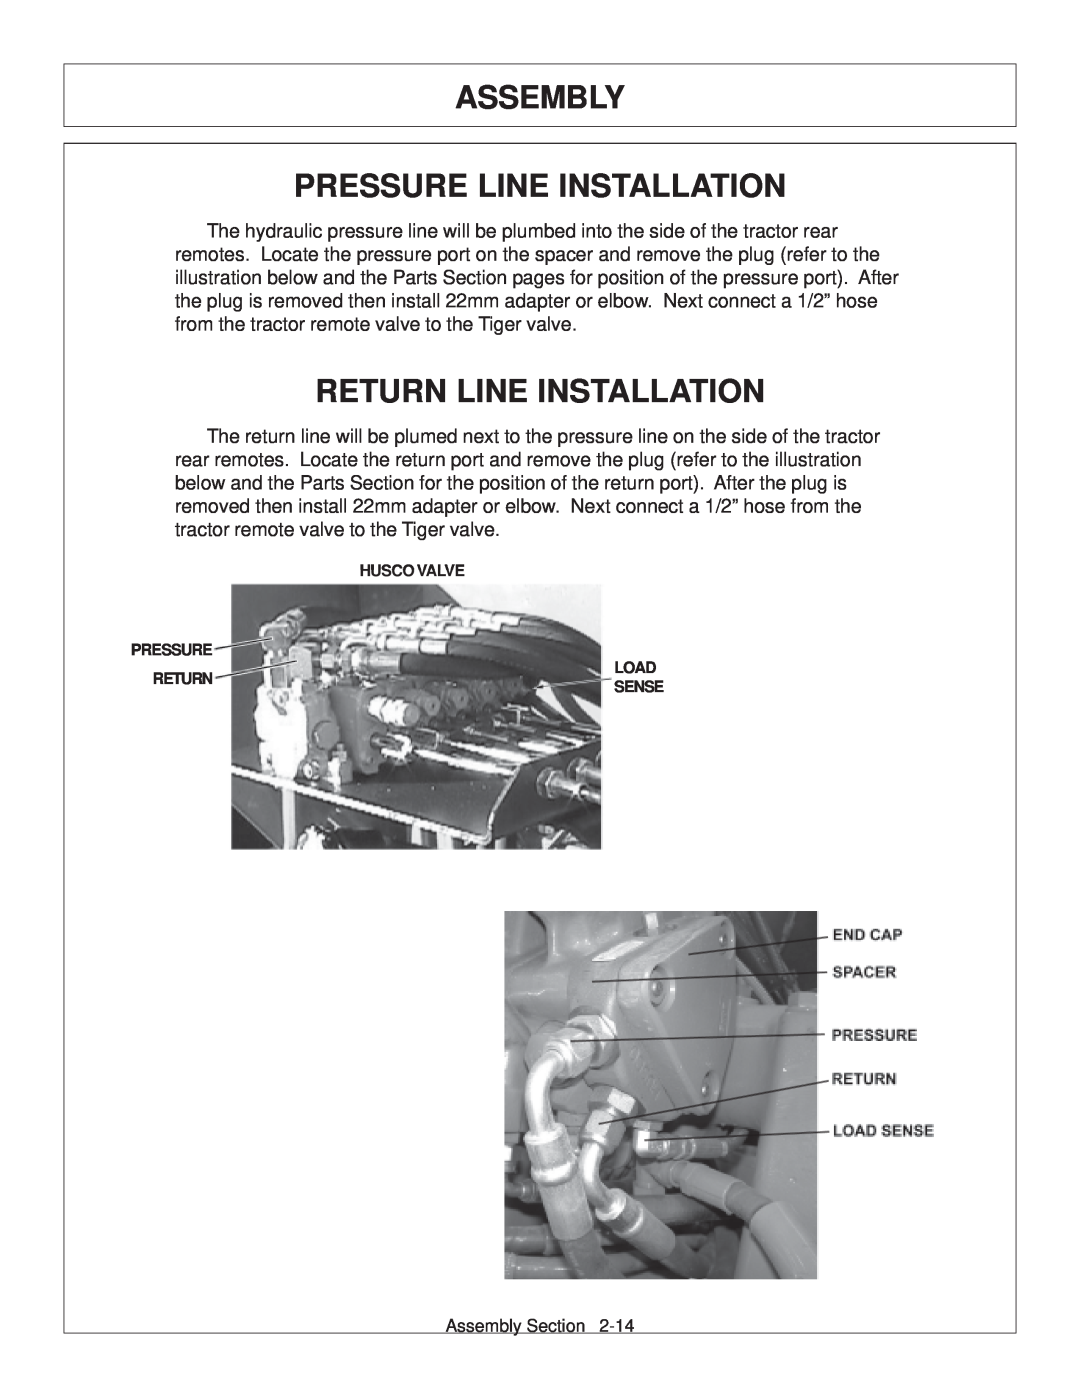 Tiger JD 62-6420 manual Assembly Pressure Line Installation, Return Line Installation, Husco Valve, Load, Sense 